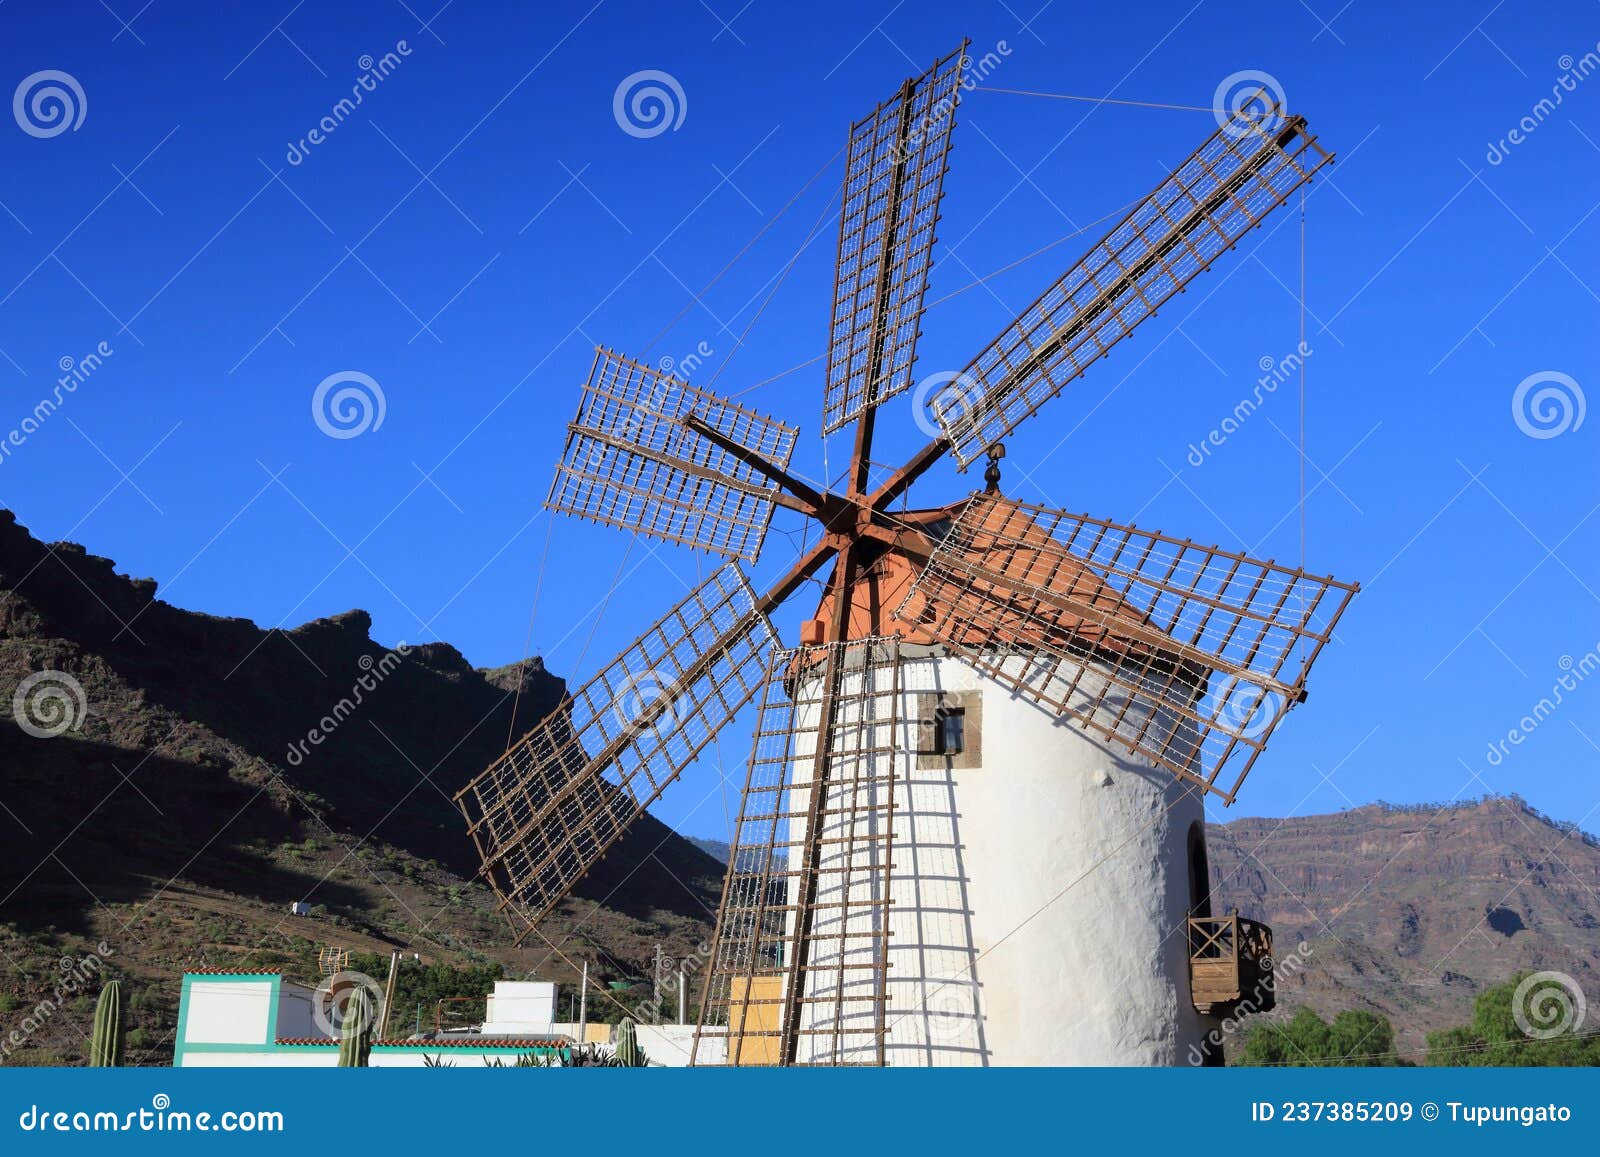 wind mill in gran canaria